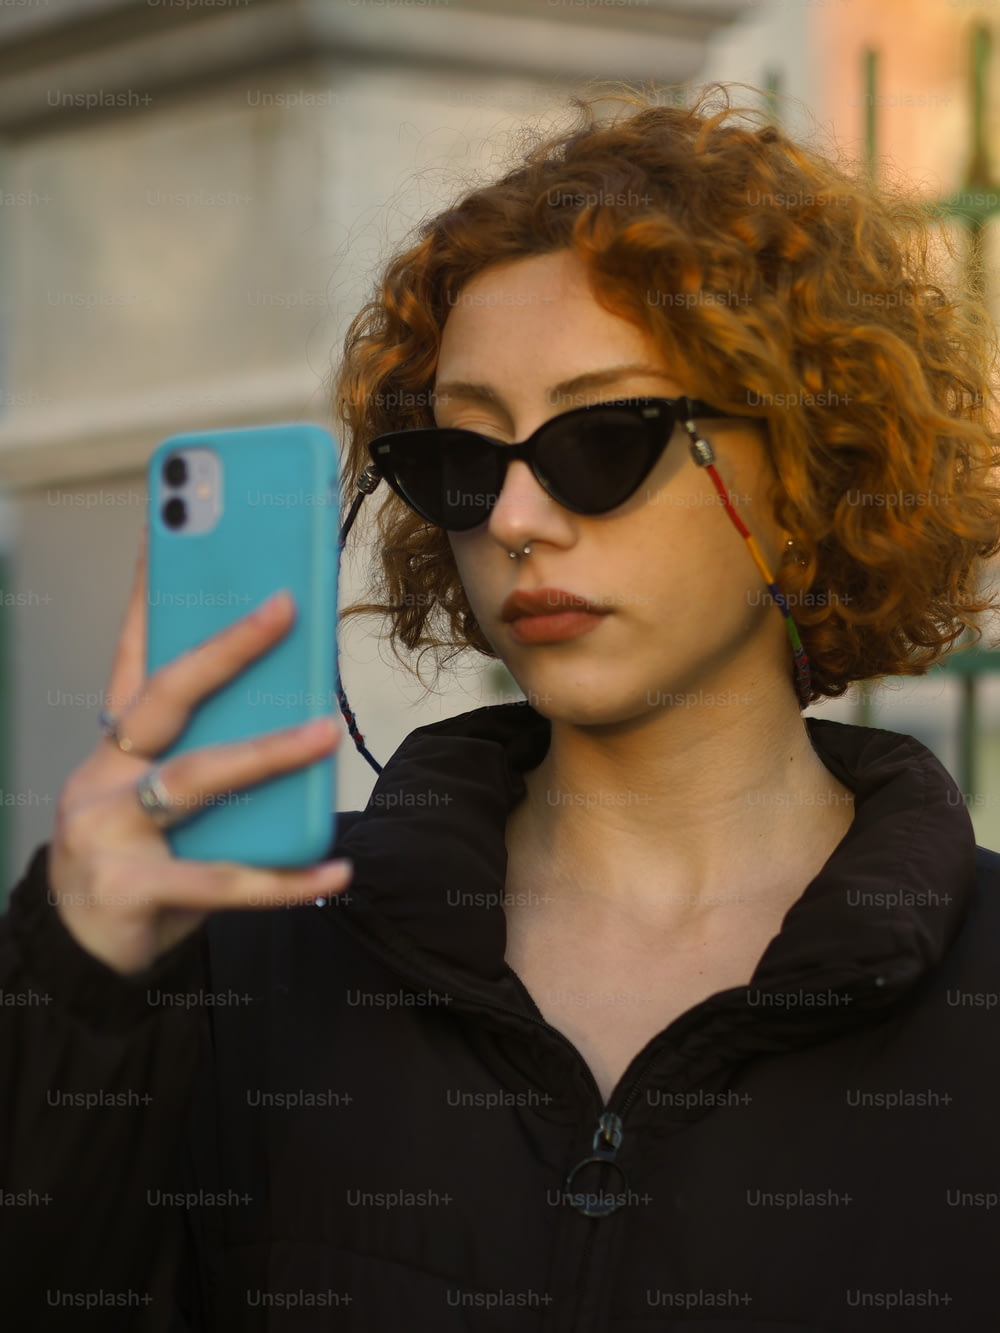 Una donna con i capelli rossi e gli occhiali da sole che tengono un telefono cellulare